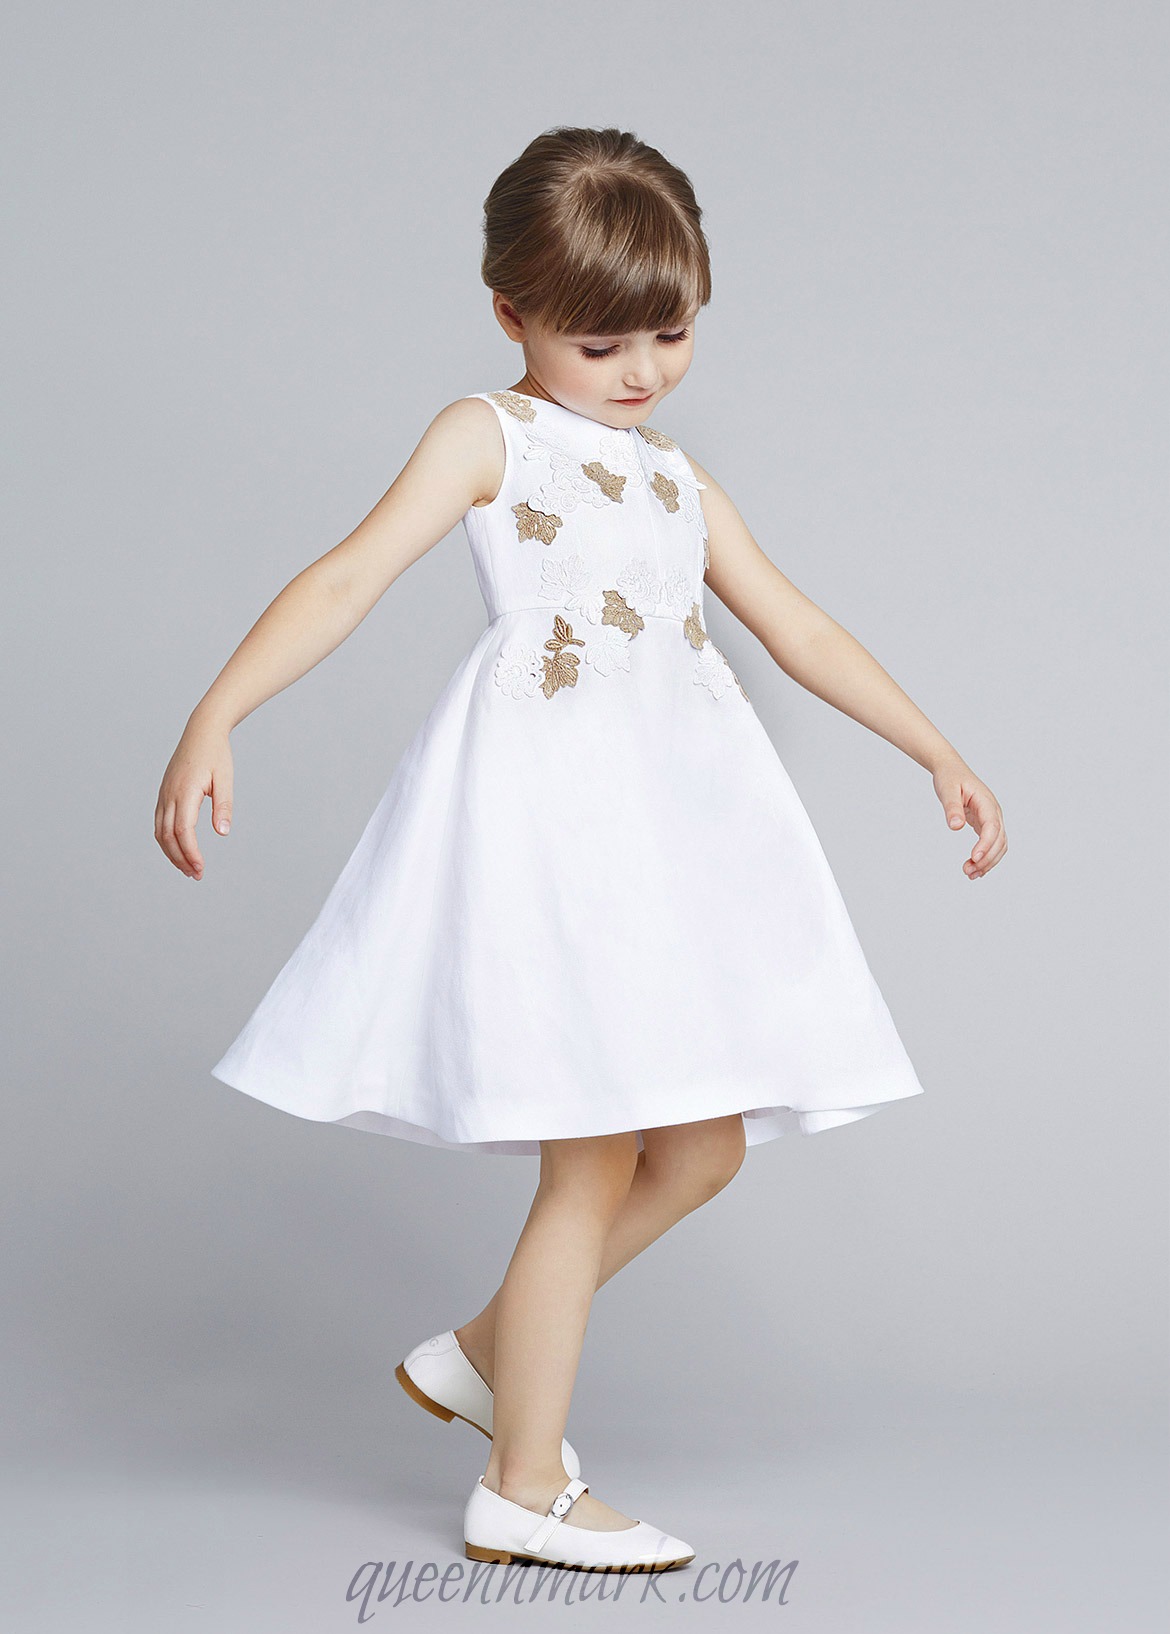 Девочка dolce. DG детские платья. Весенние белое платье для детей. Платье для девочки Дольче Габбана. Весеннее платье для девочки 4 года.